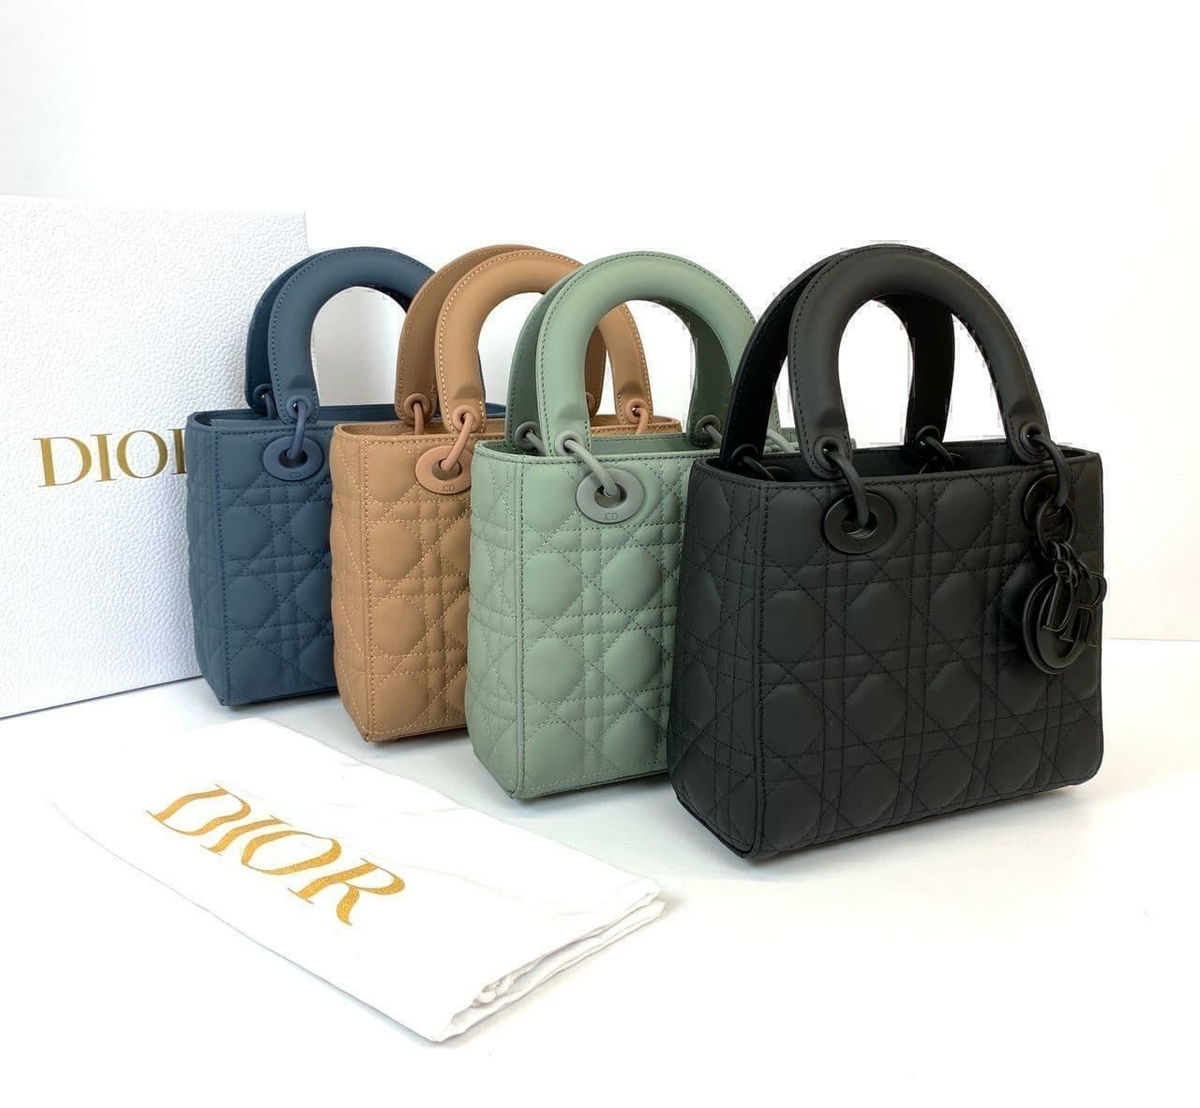 Dior сумка #1 в «Globestyle» арт.184014MX